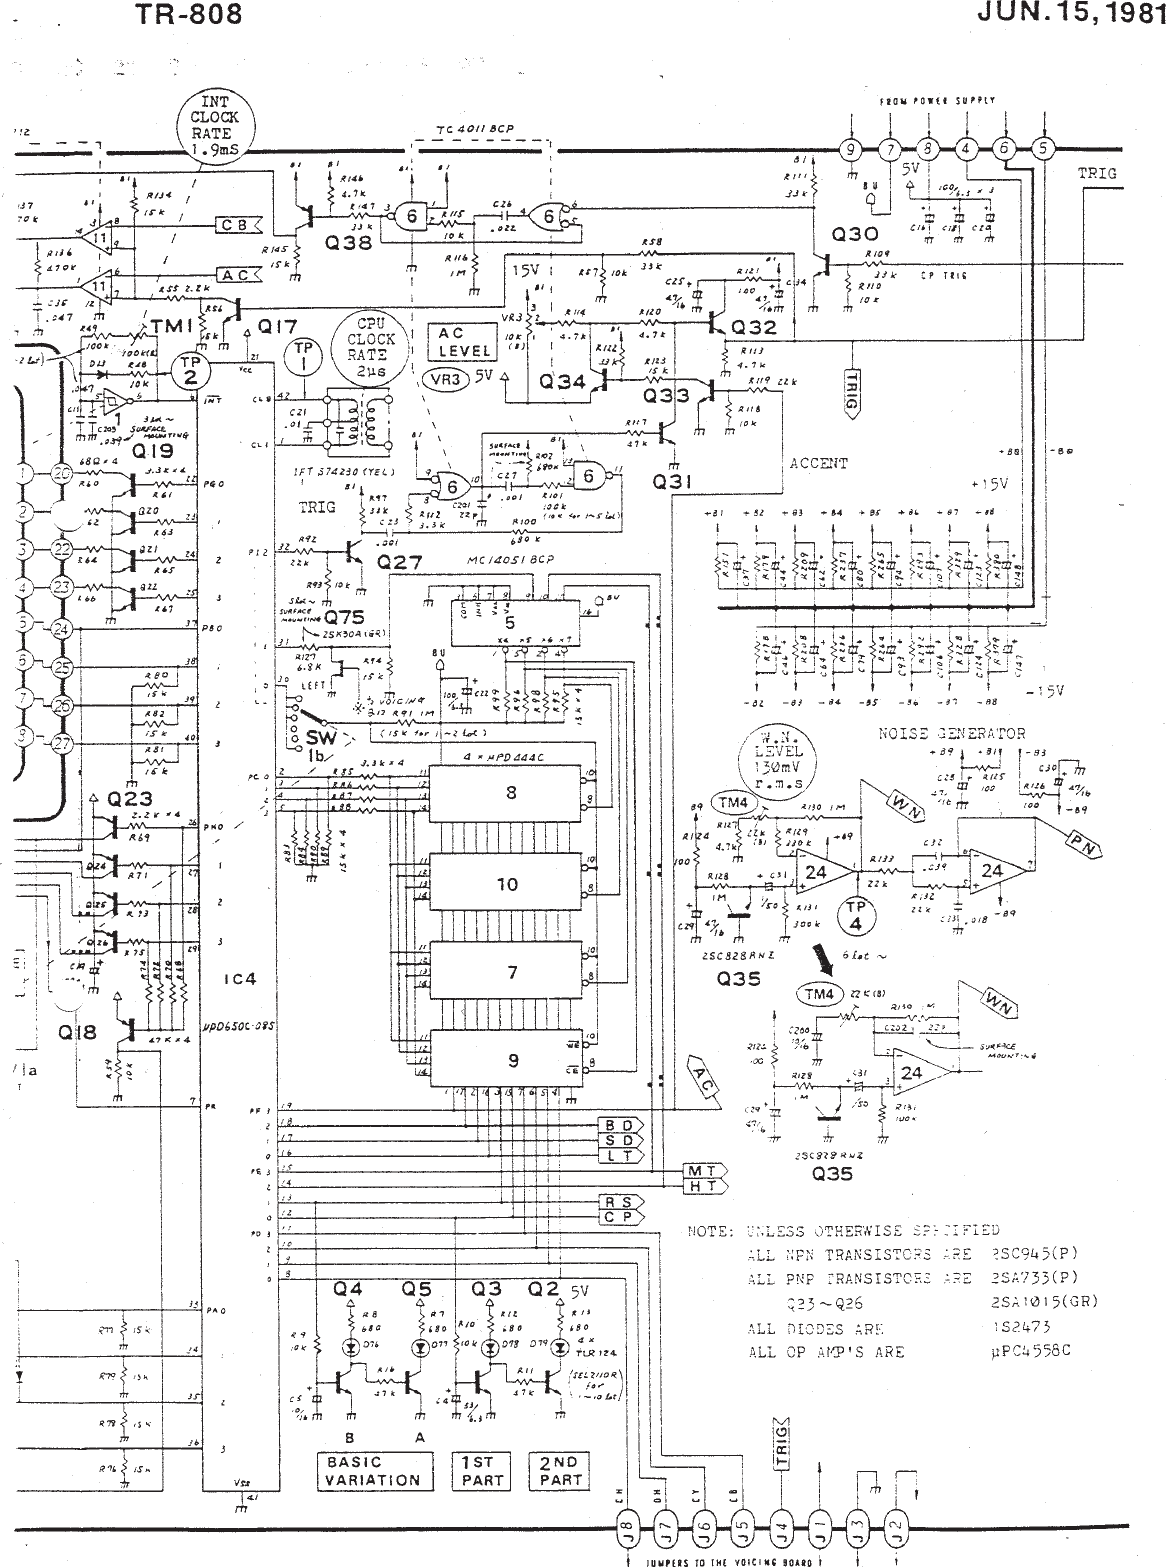 Page 4 of 6 - TR-808 Schematics (all Below)